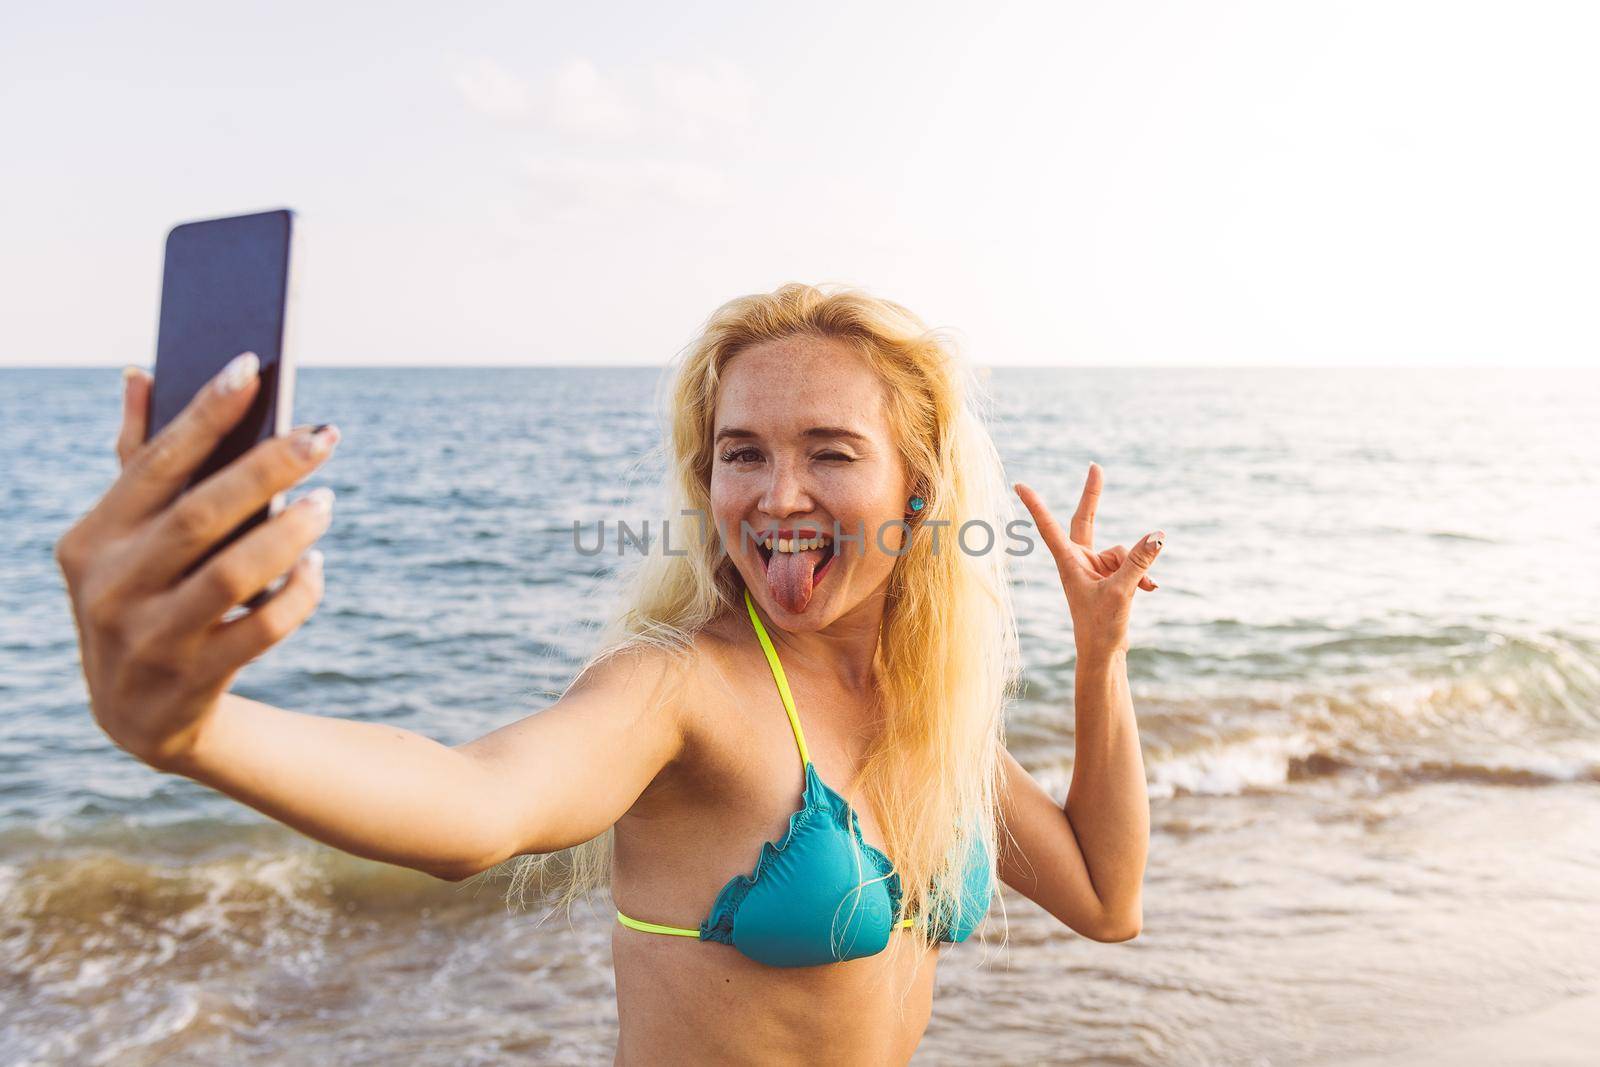 blonde woman taking a selfie photo at beach by raulmelldo